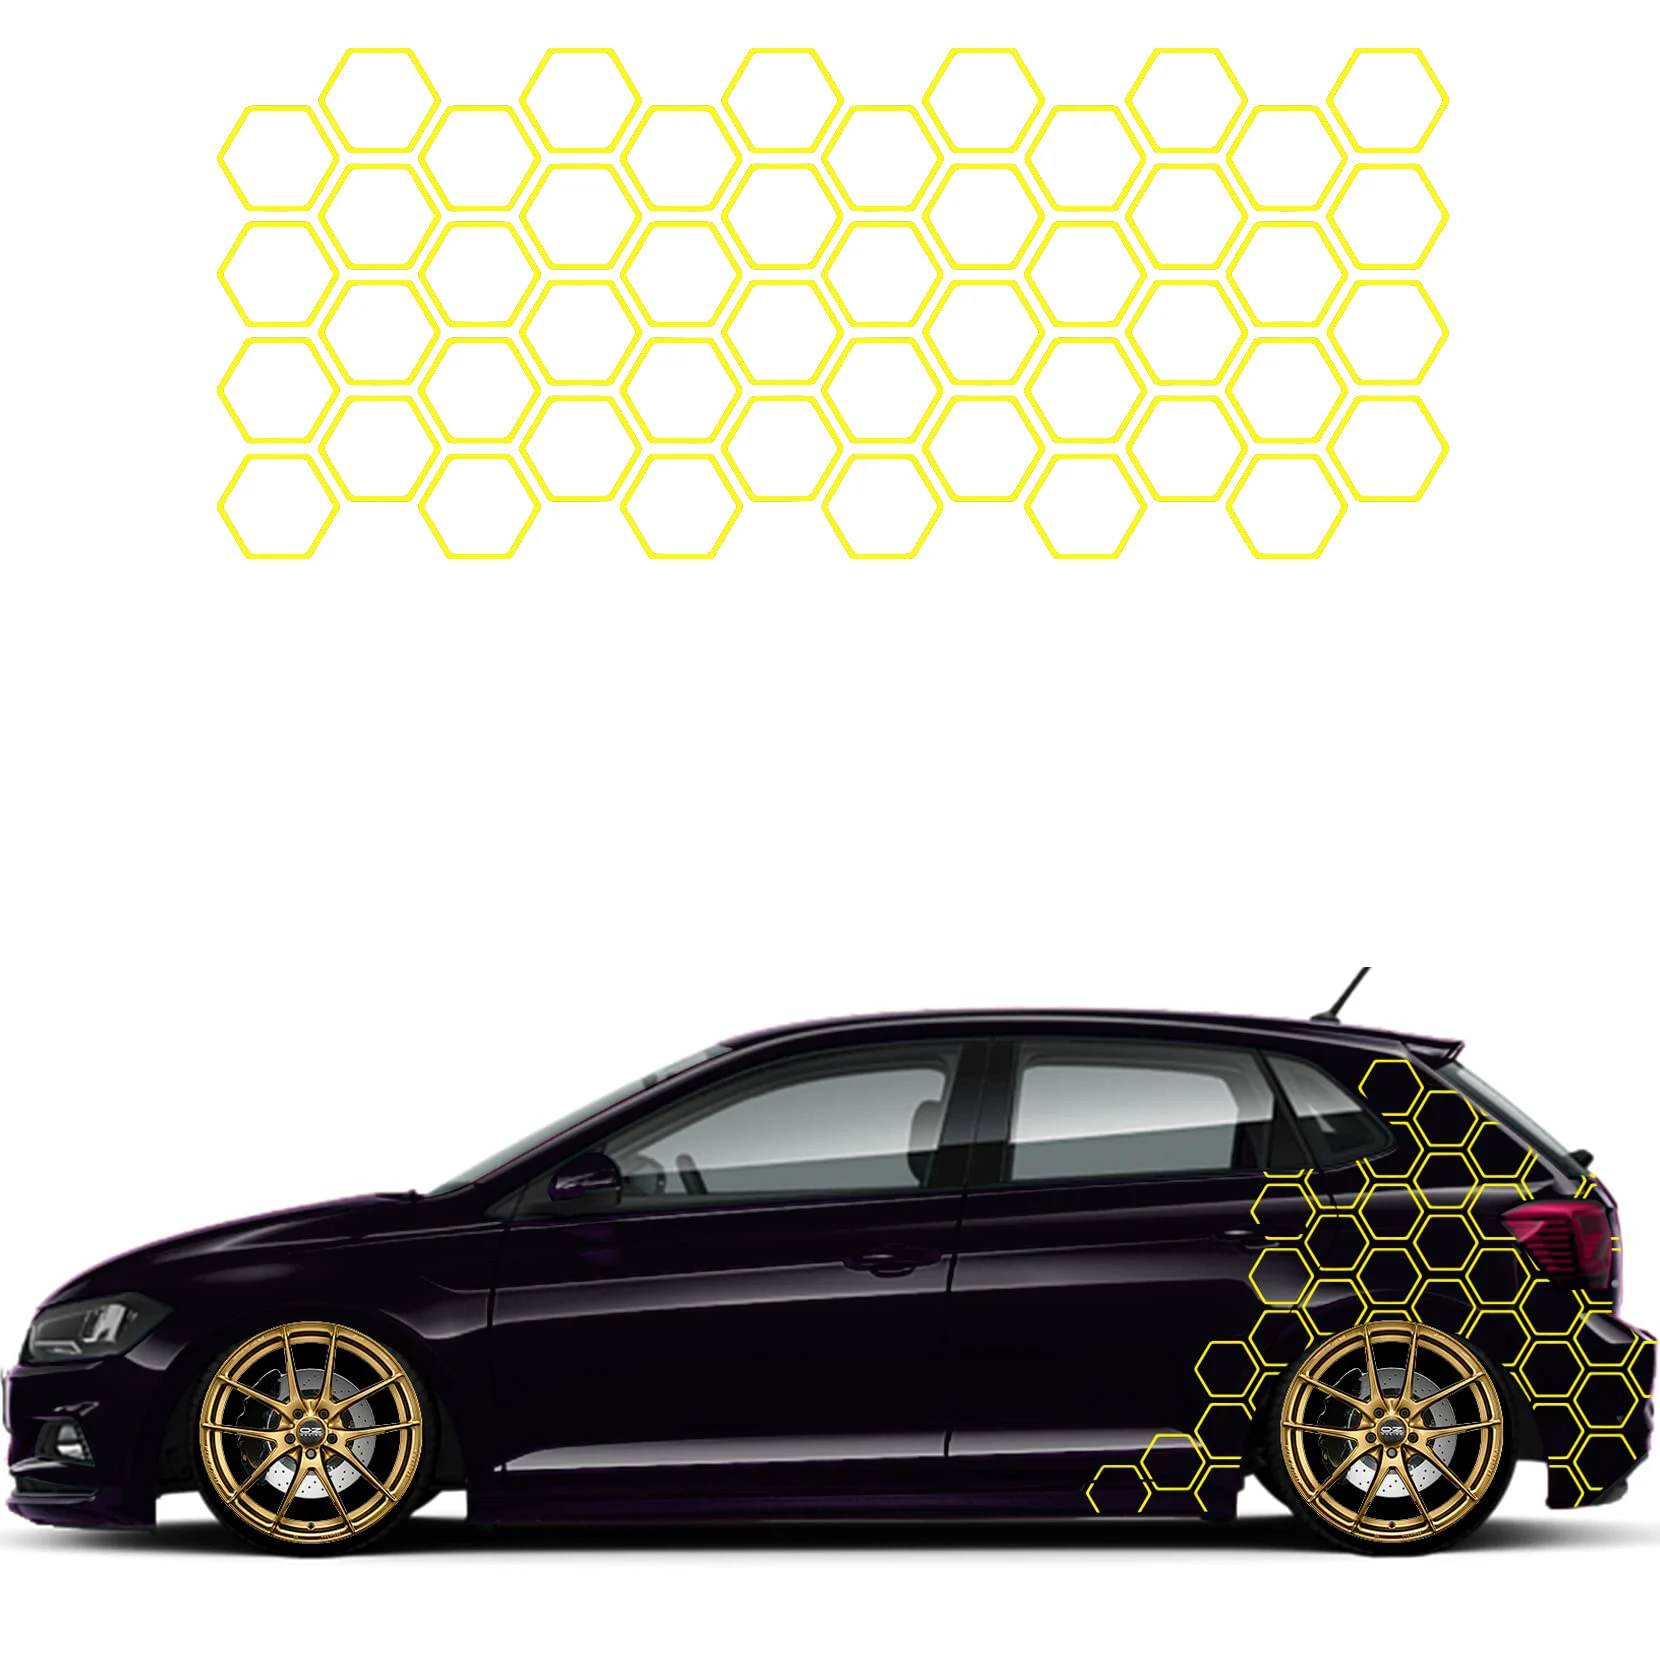 Auto Aufkleber Patches nähen lustige kreative Dekoration Aufkleber für  Türen Auto Tuning Styling Vinyls d40 - AliExpress